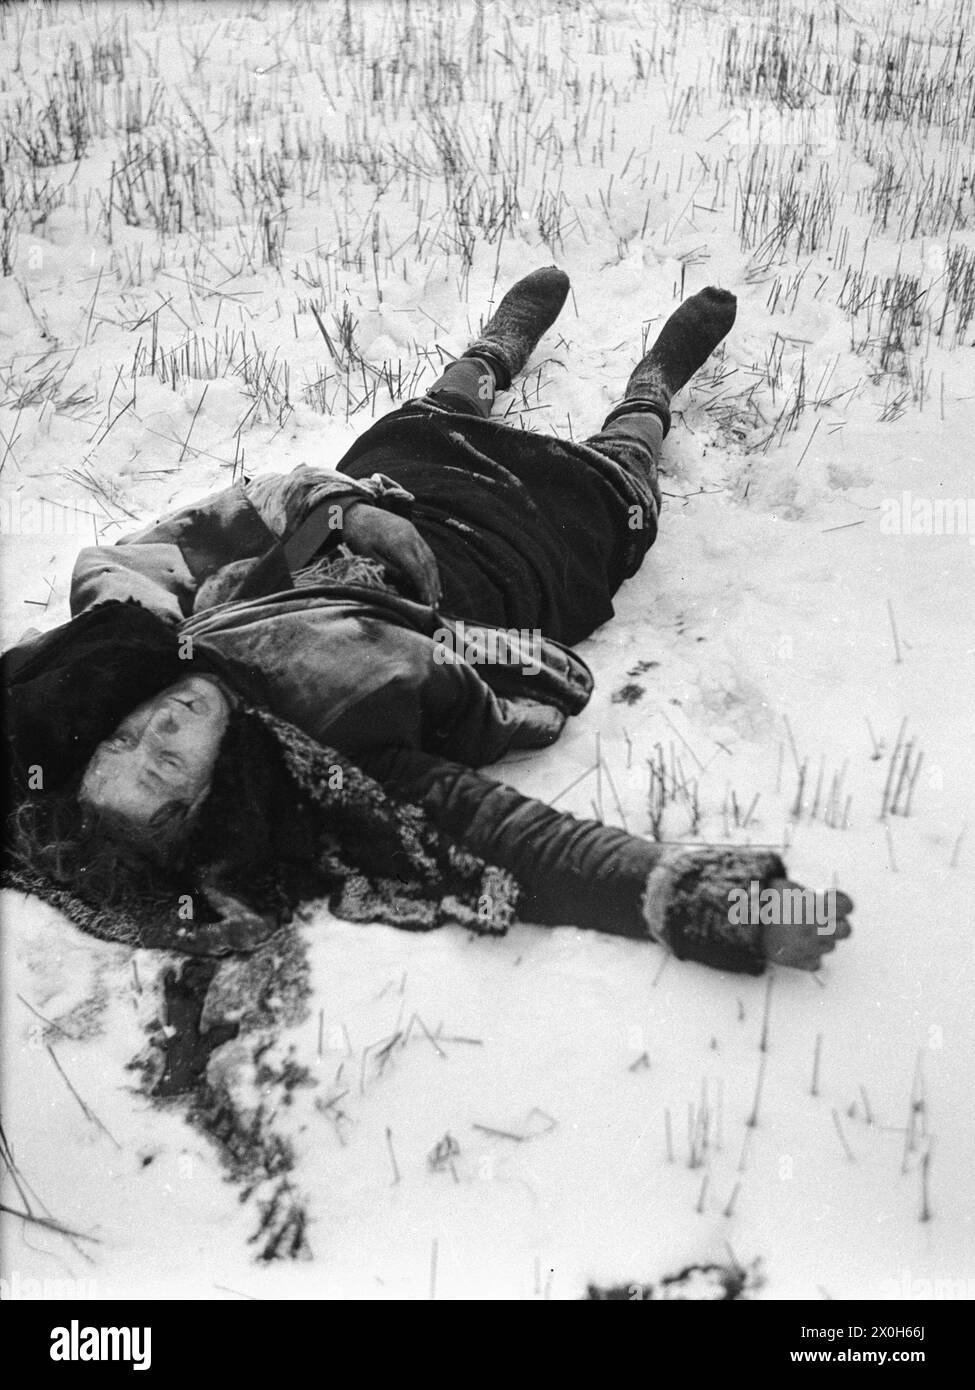 Un russe abattu est couché dans la neige dans un champ récolté. Photo non datée. [traduction automatique] Banque D'Images